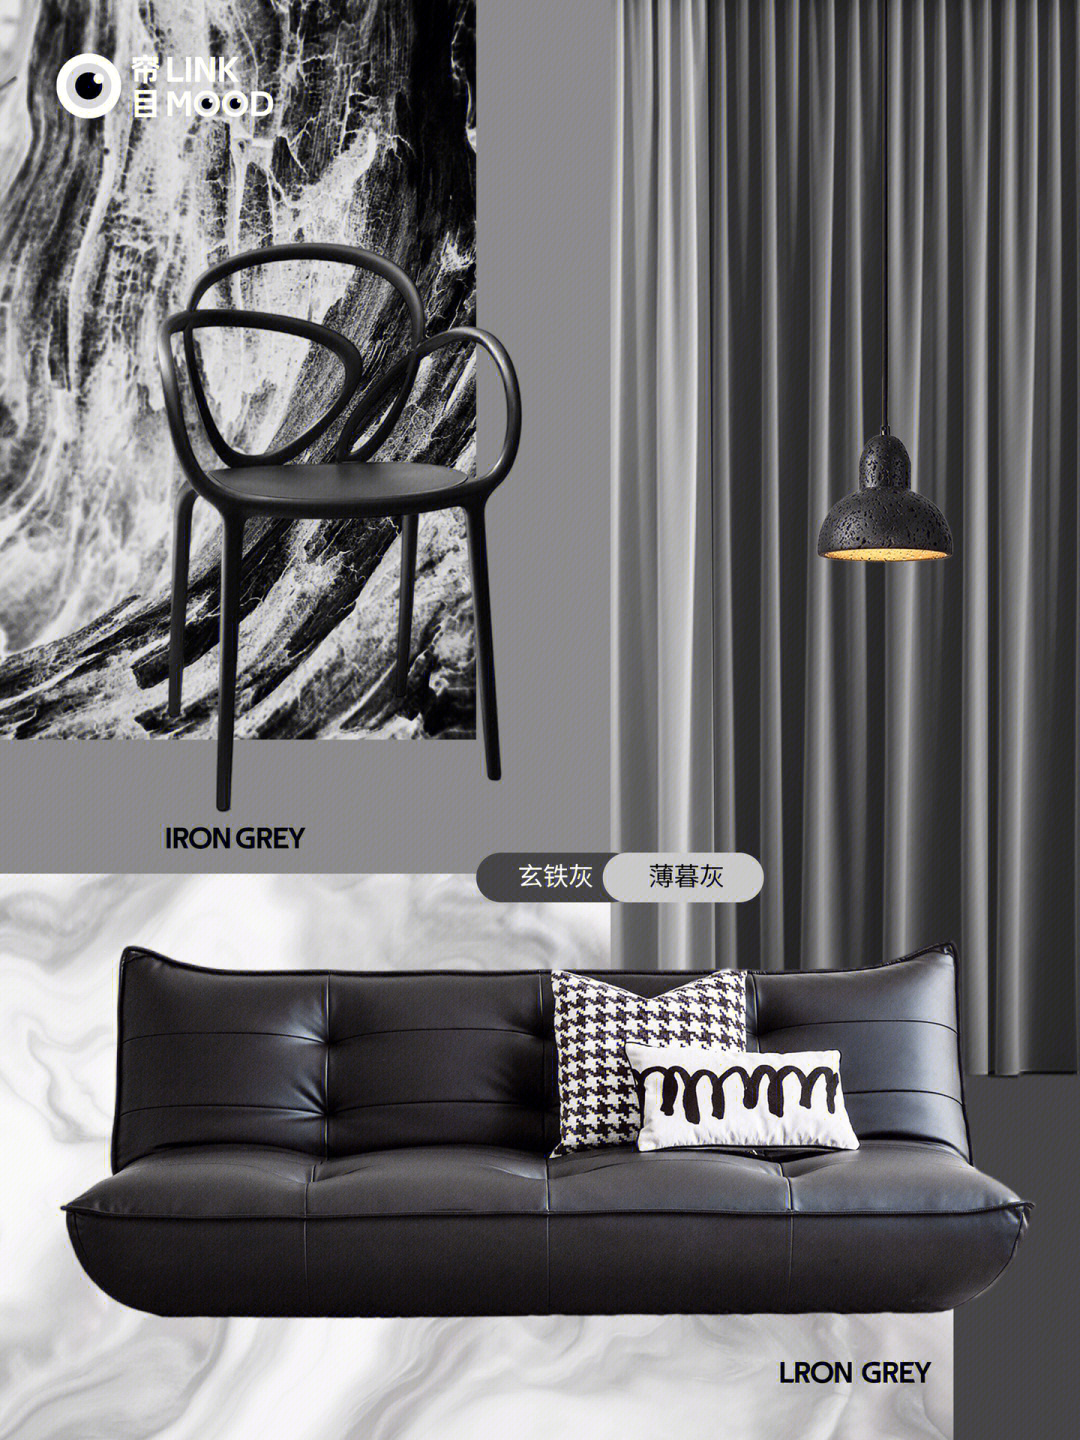 黑沙发拼色窗帘配色方案让客厅颜值翻倍